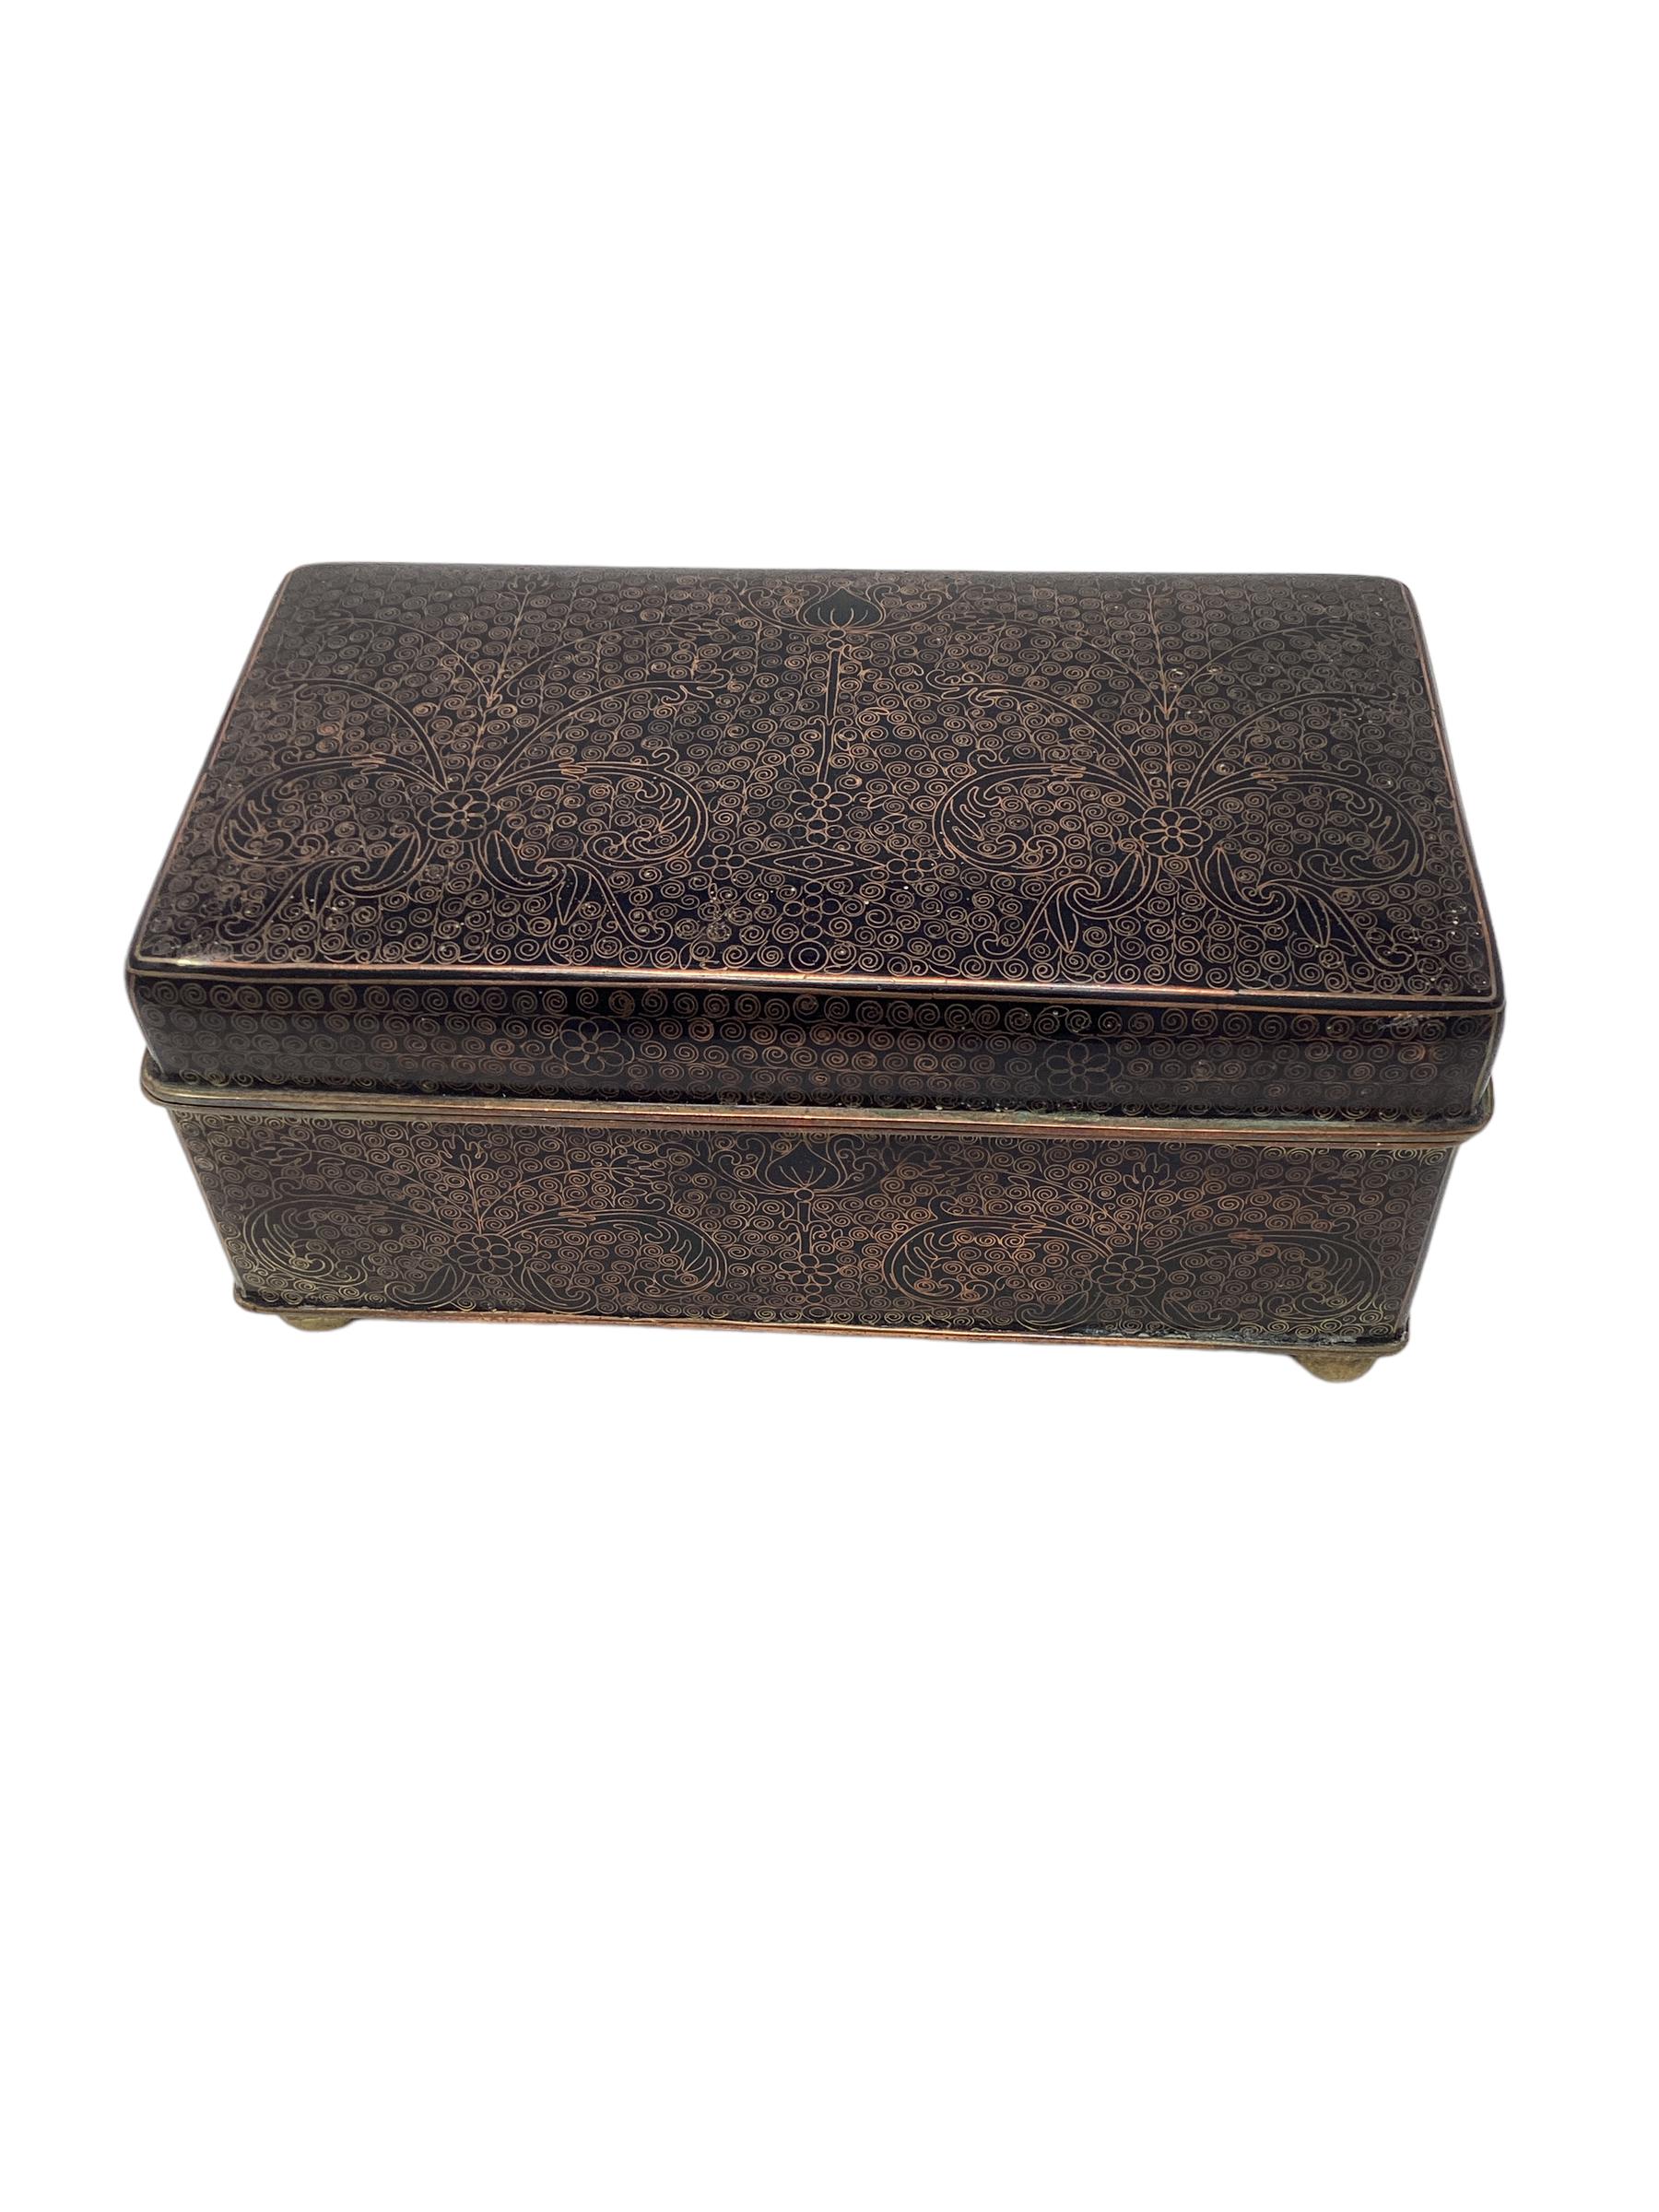 Ancienne boîte cloisonnée chinoise avec intérieur en bois. La boîte repose sur des pieds ronds en laiton. L'intérieur semble avoir eu des séparateurs qui ne sont plus dans la boîte.